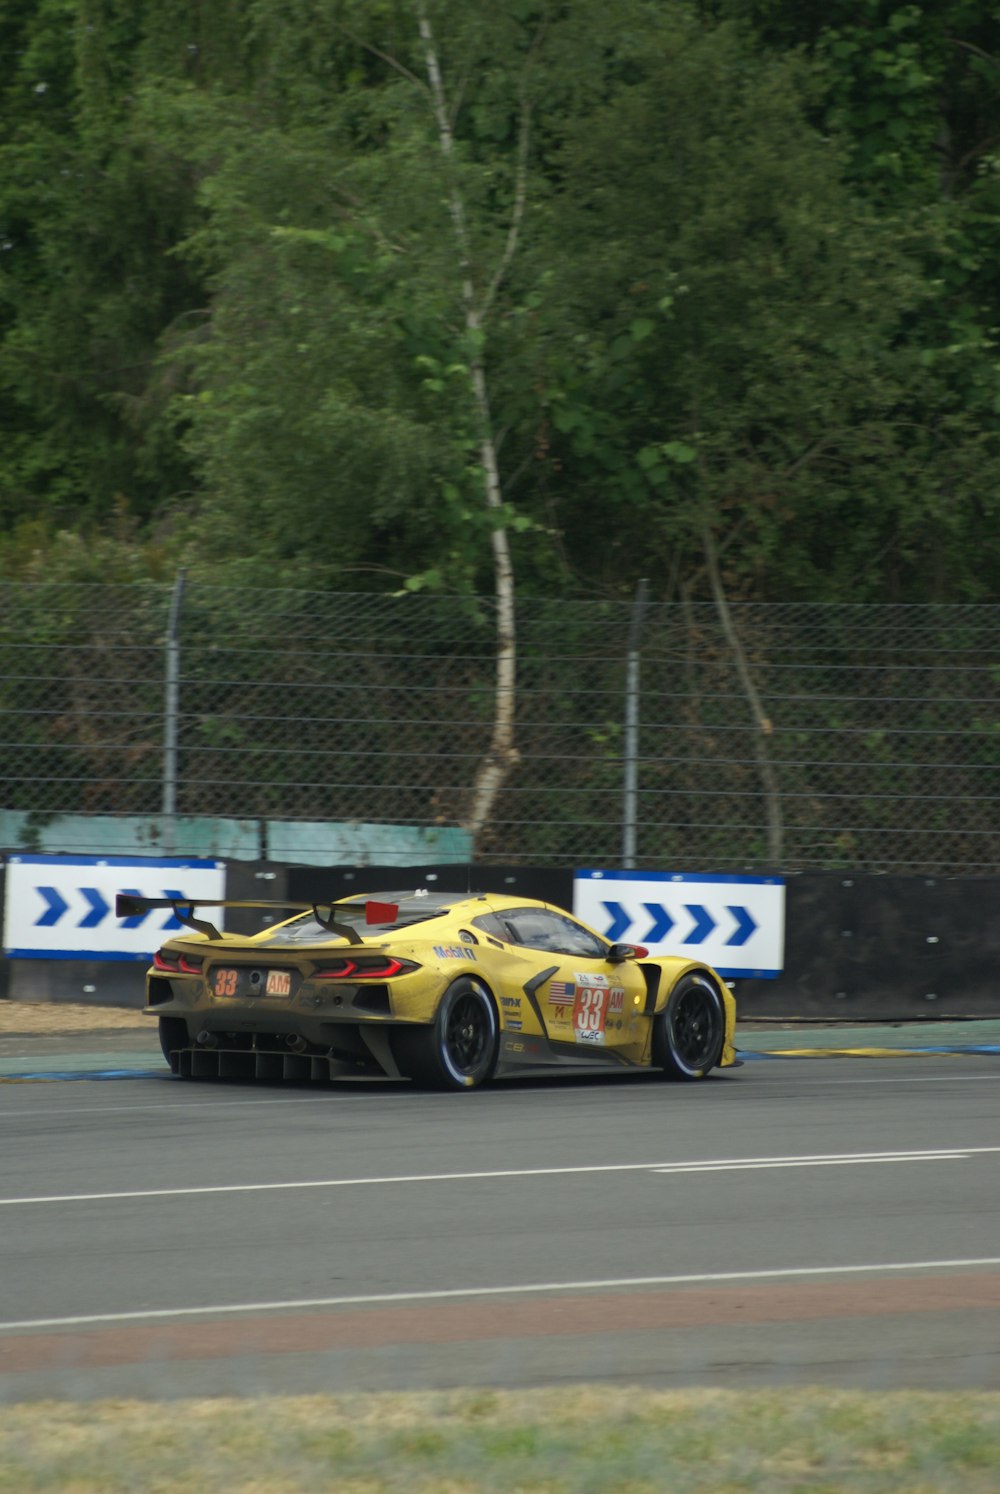 Un auto deportivo amarillo conduciendo por una pista de carreras